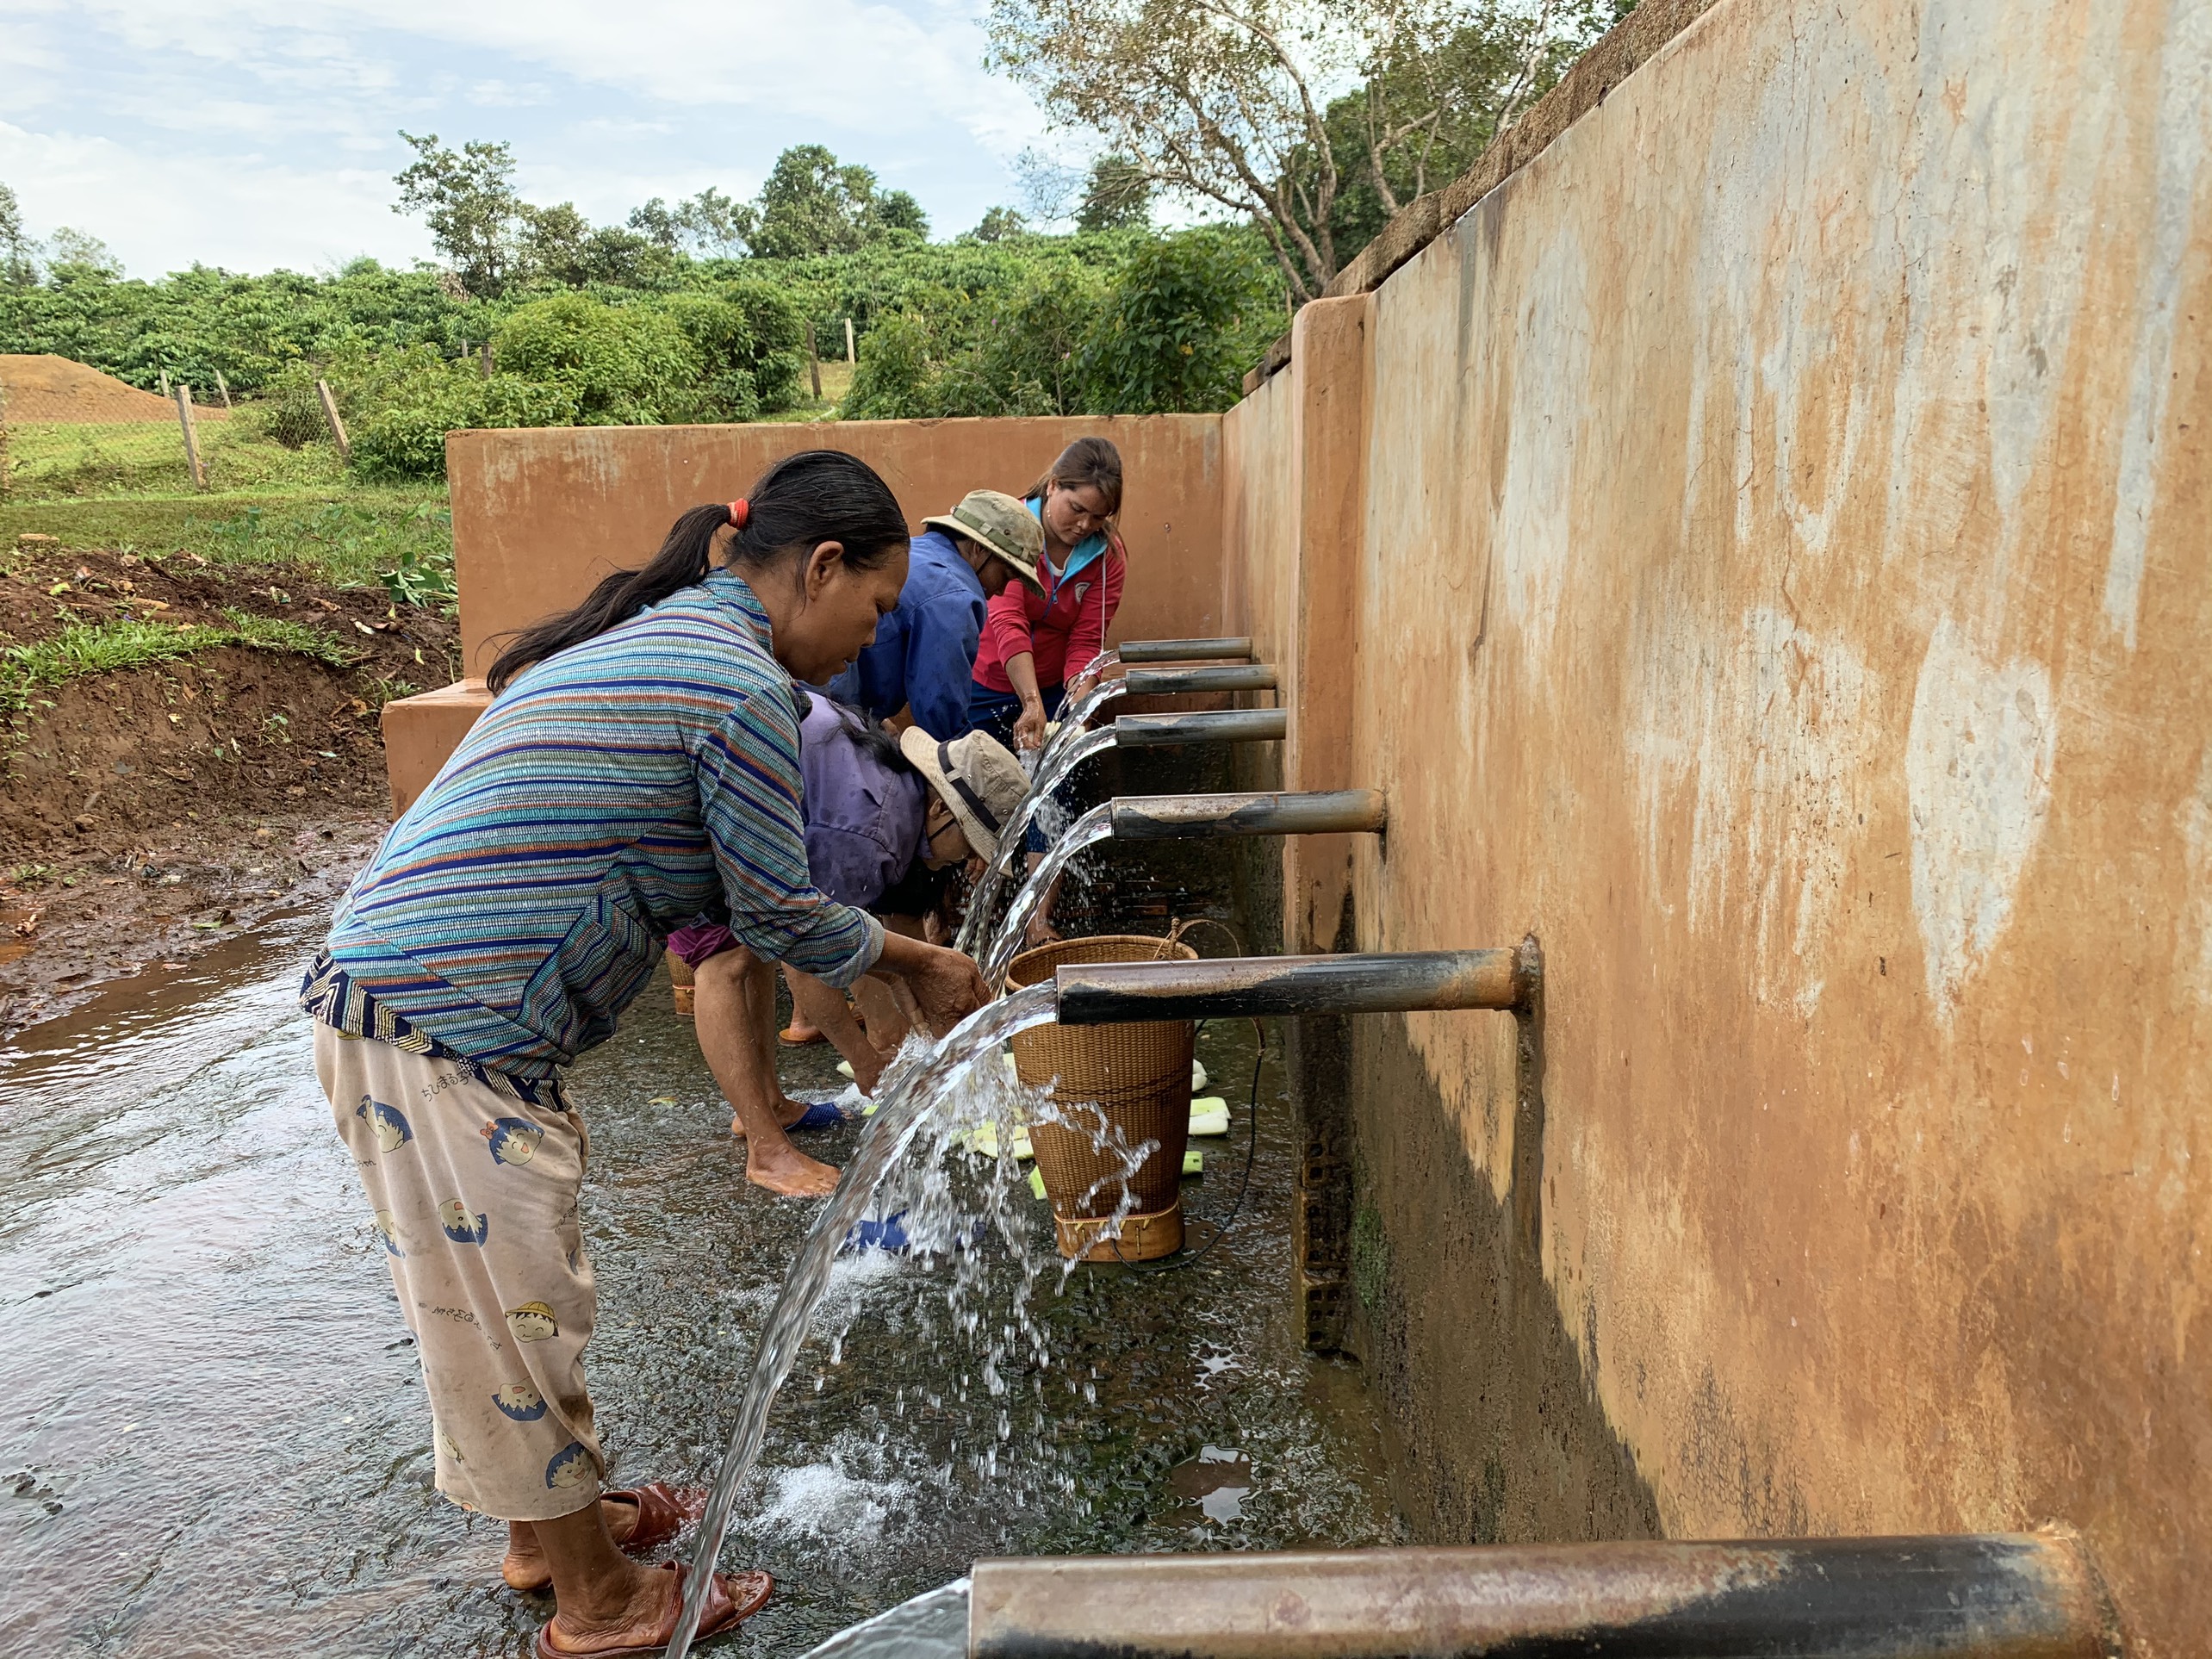 Giọt nước của làng Krêl là nơi cung cấp nguồn nước sinh hoạt cho bà con được gìn giữ qua bao đời. Ảnh: Phương Linh